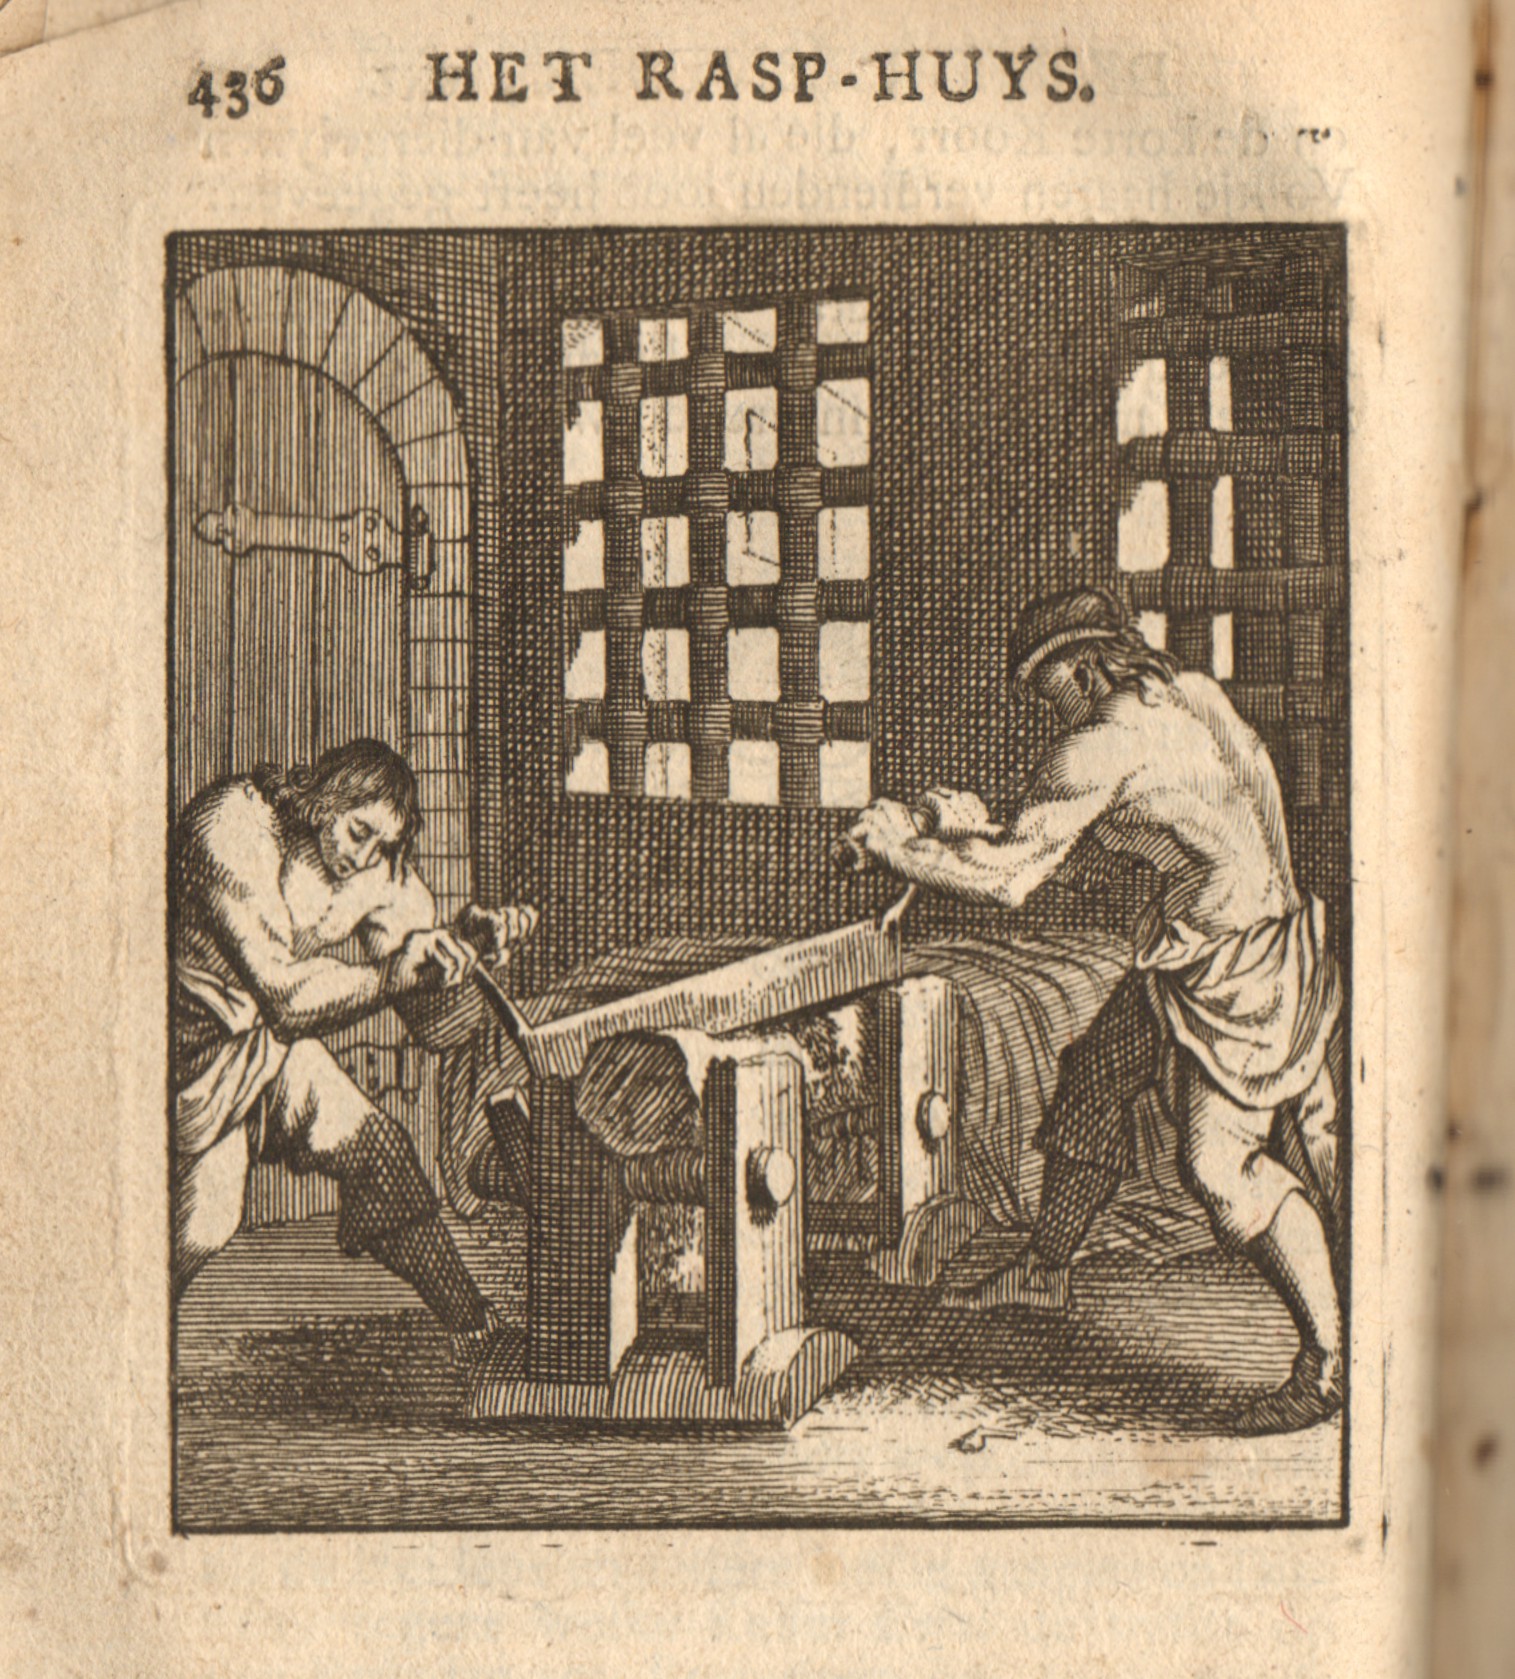 Het rasphuis, waar gevangenen houtraspen, 18e eeuw.